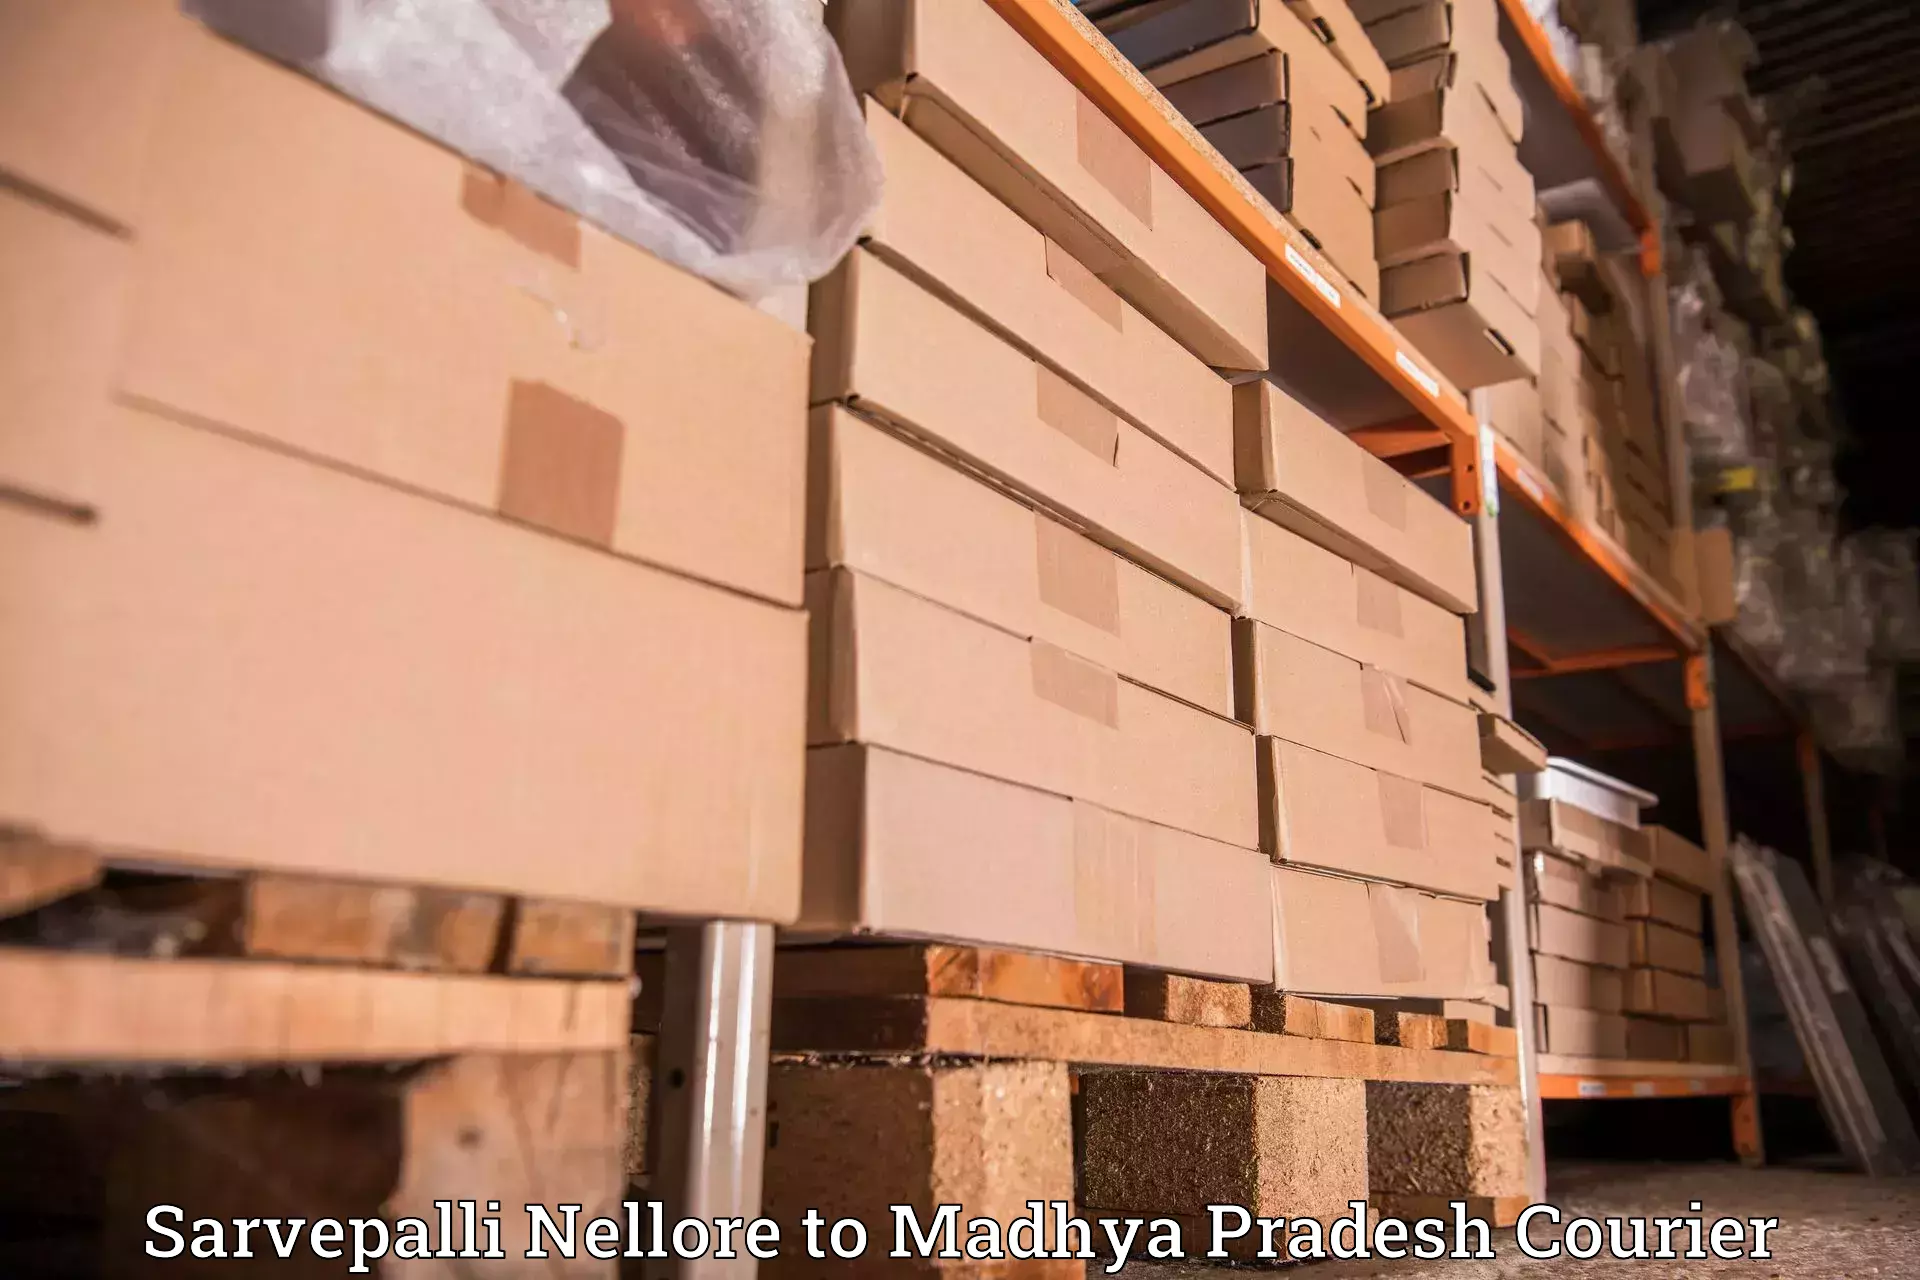 Doorstep delivery service Sarvepalli Nellore to Chandla